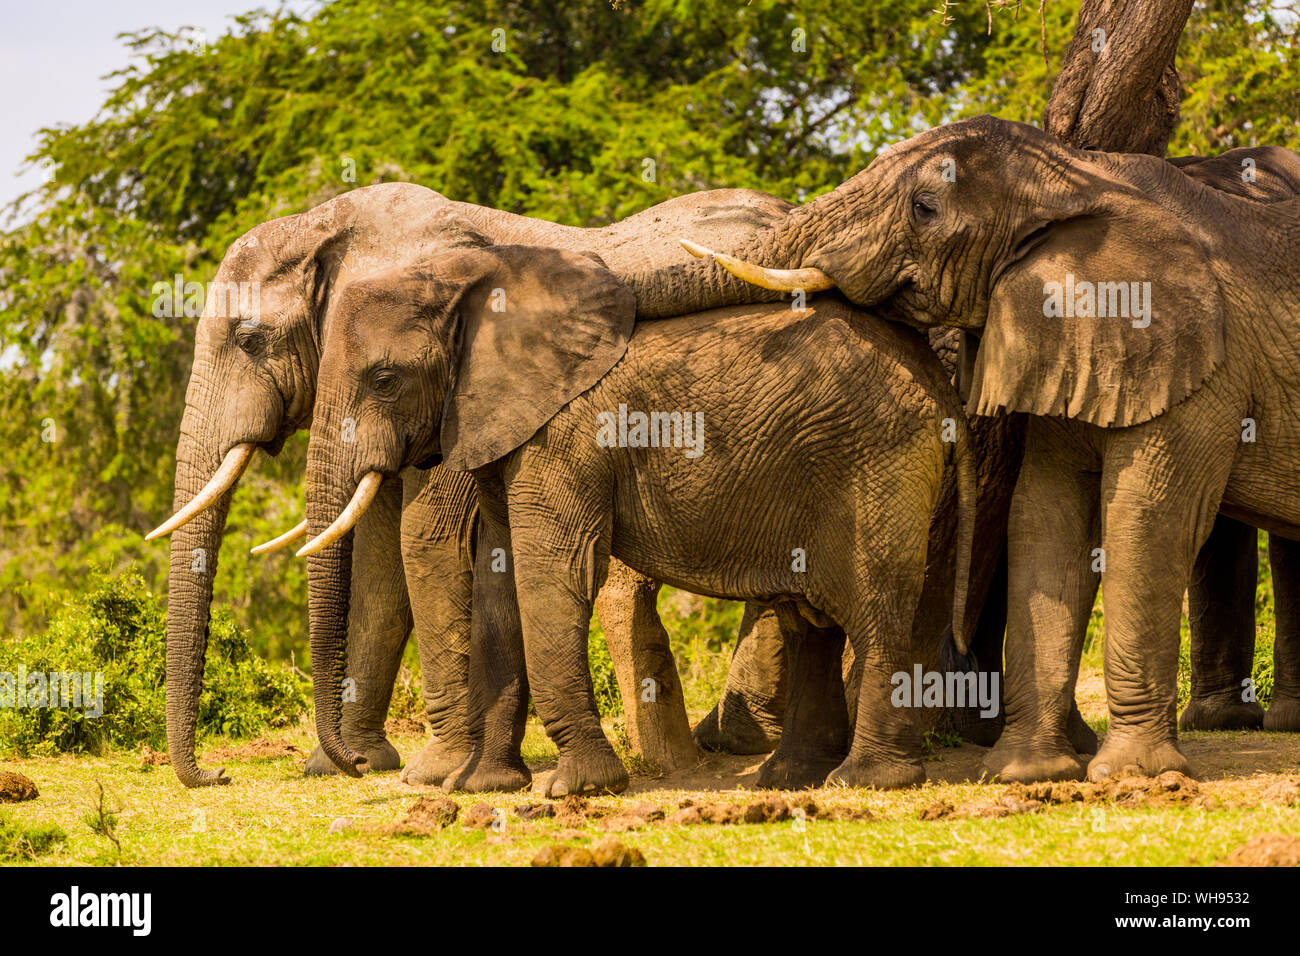 Elephants in Queen Elizabeth National Park, Uganda, East Africa, Africa Stock Photo